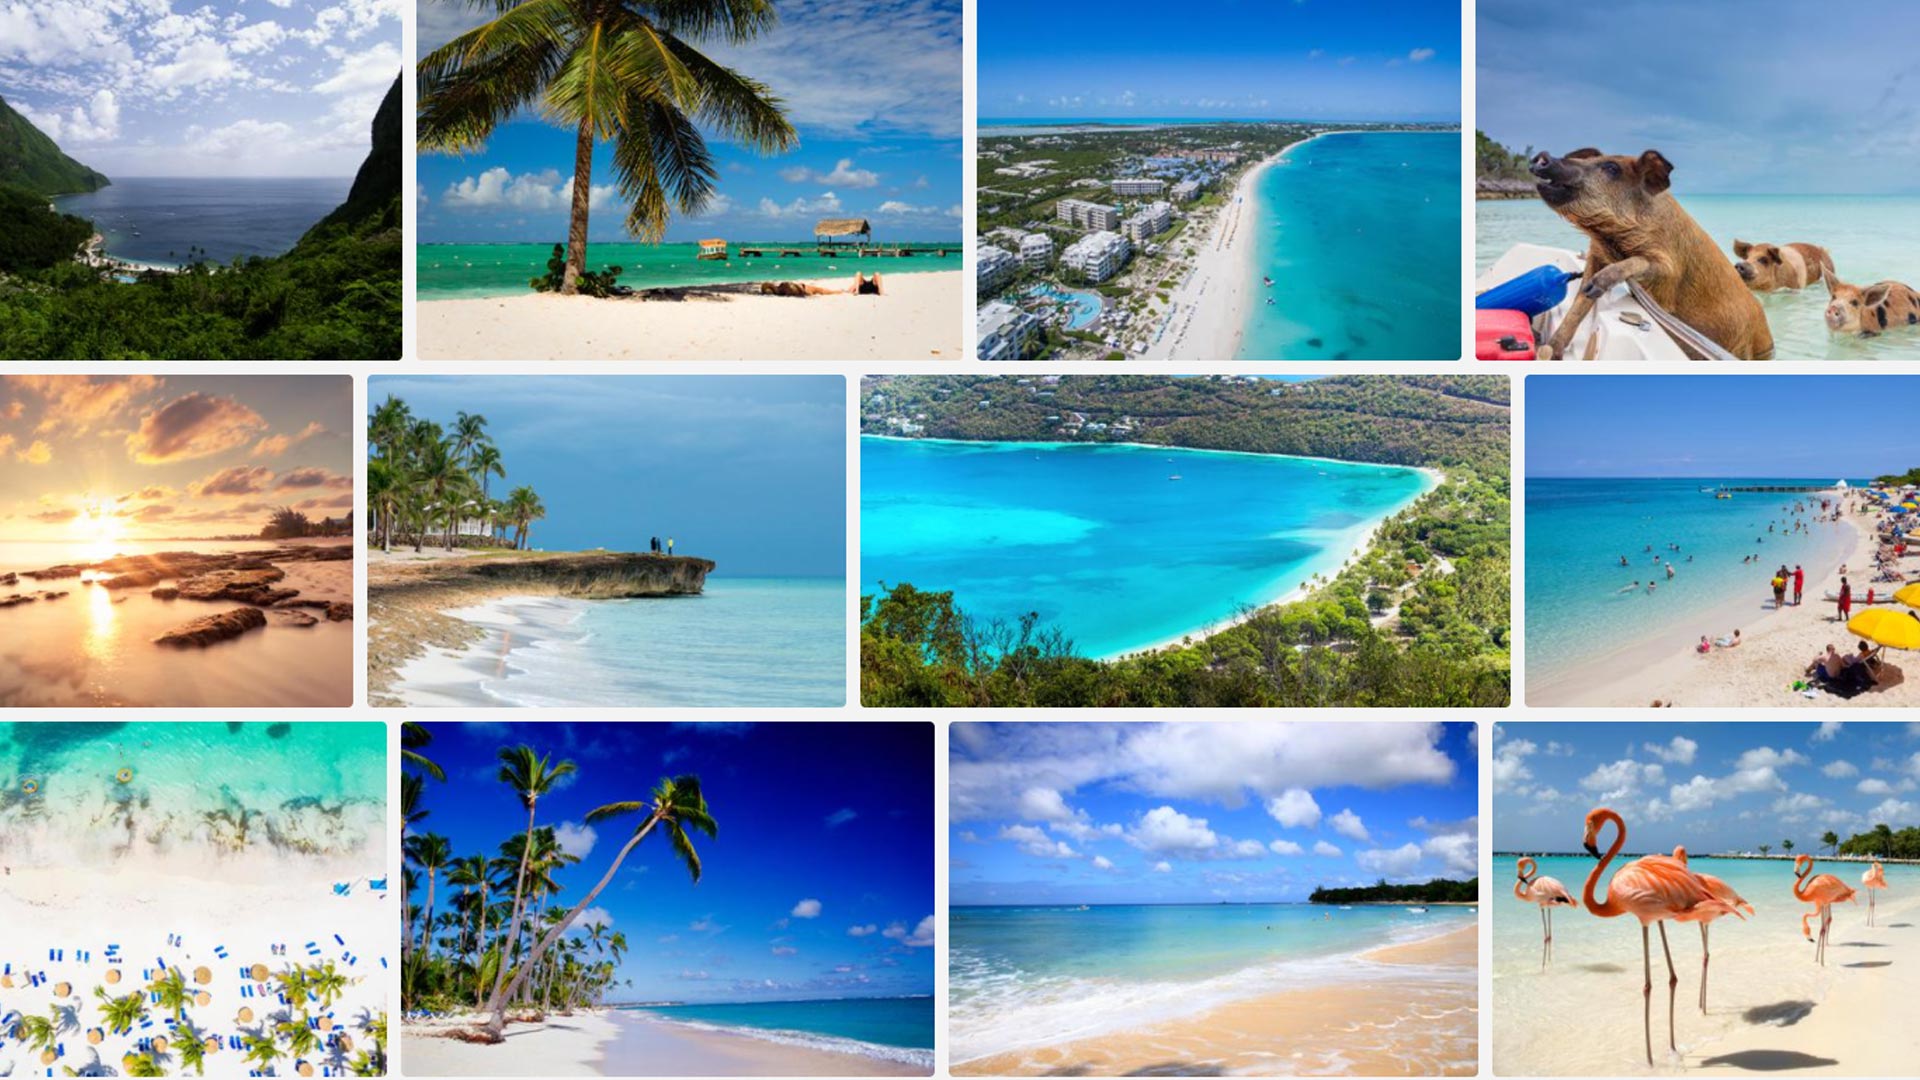 Un recorrido por algunos de los destinos caribeños más populares y otros bastante desconocidos pero igualmente paradisíacos